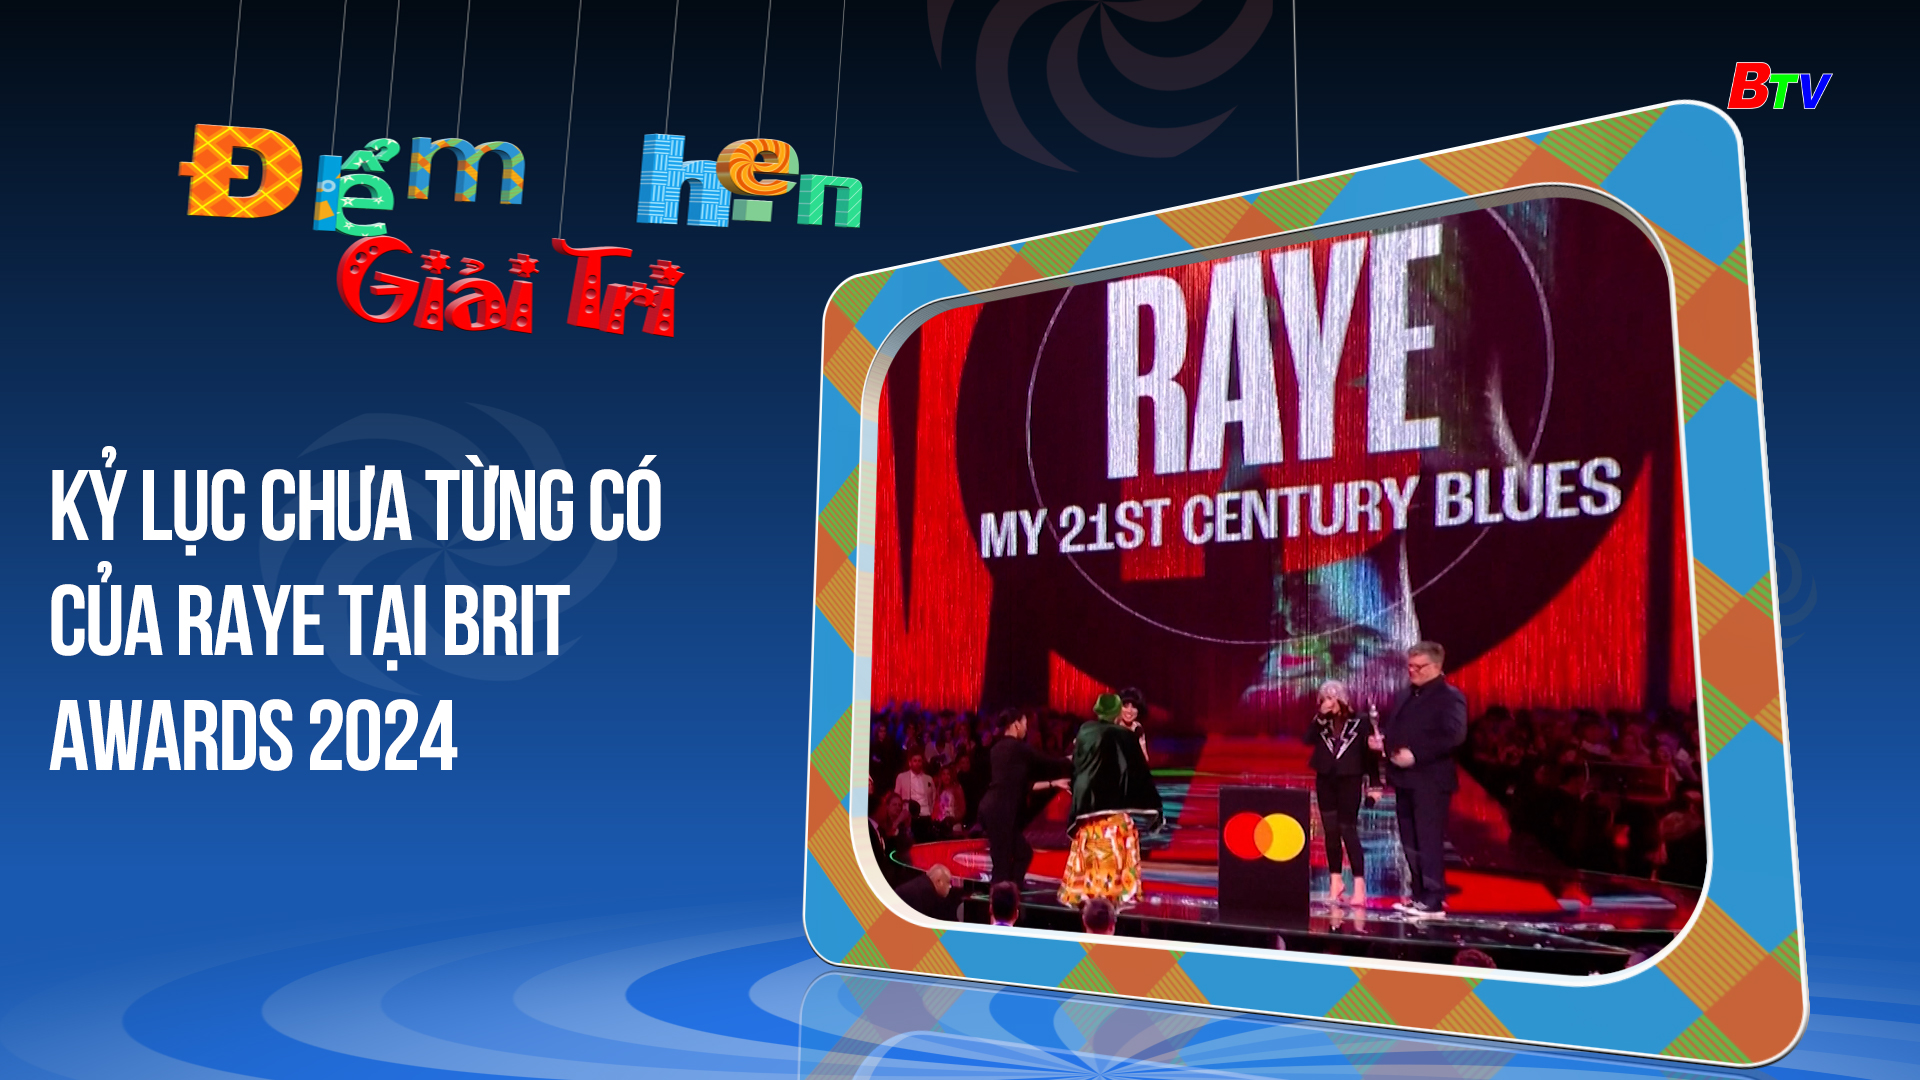 Kỷ lục chưa từng có của Raye tại Brit awards 2024 | Điểm hẹn giải trí | 4/3/2024